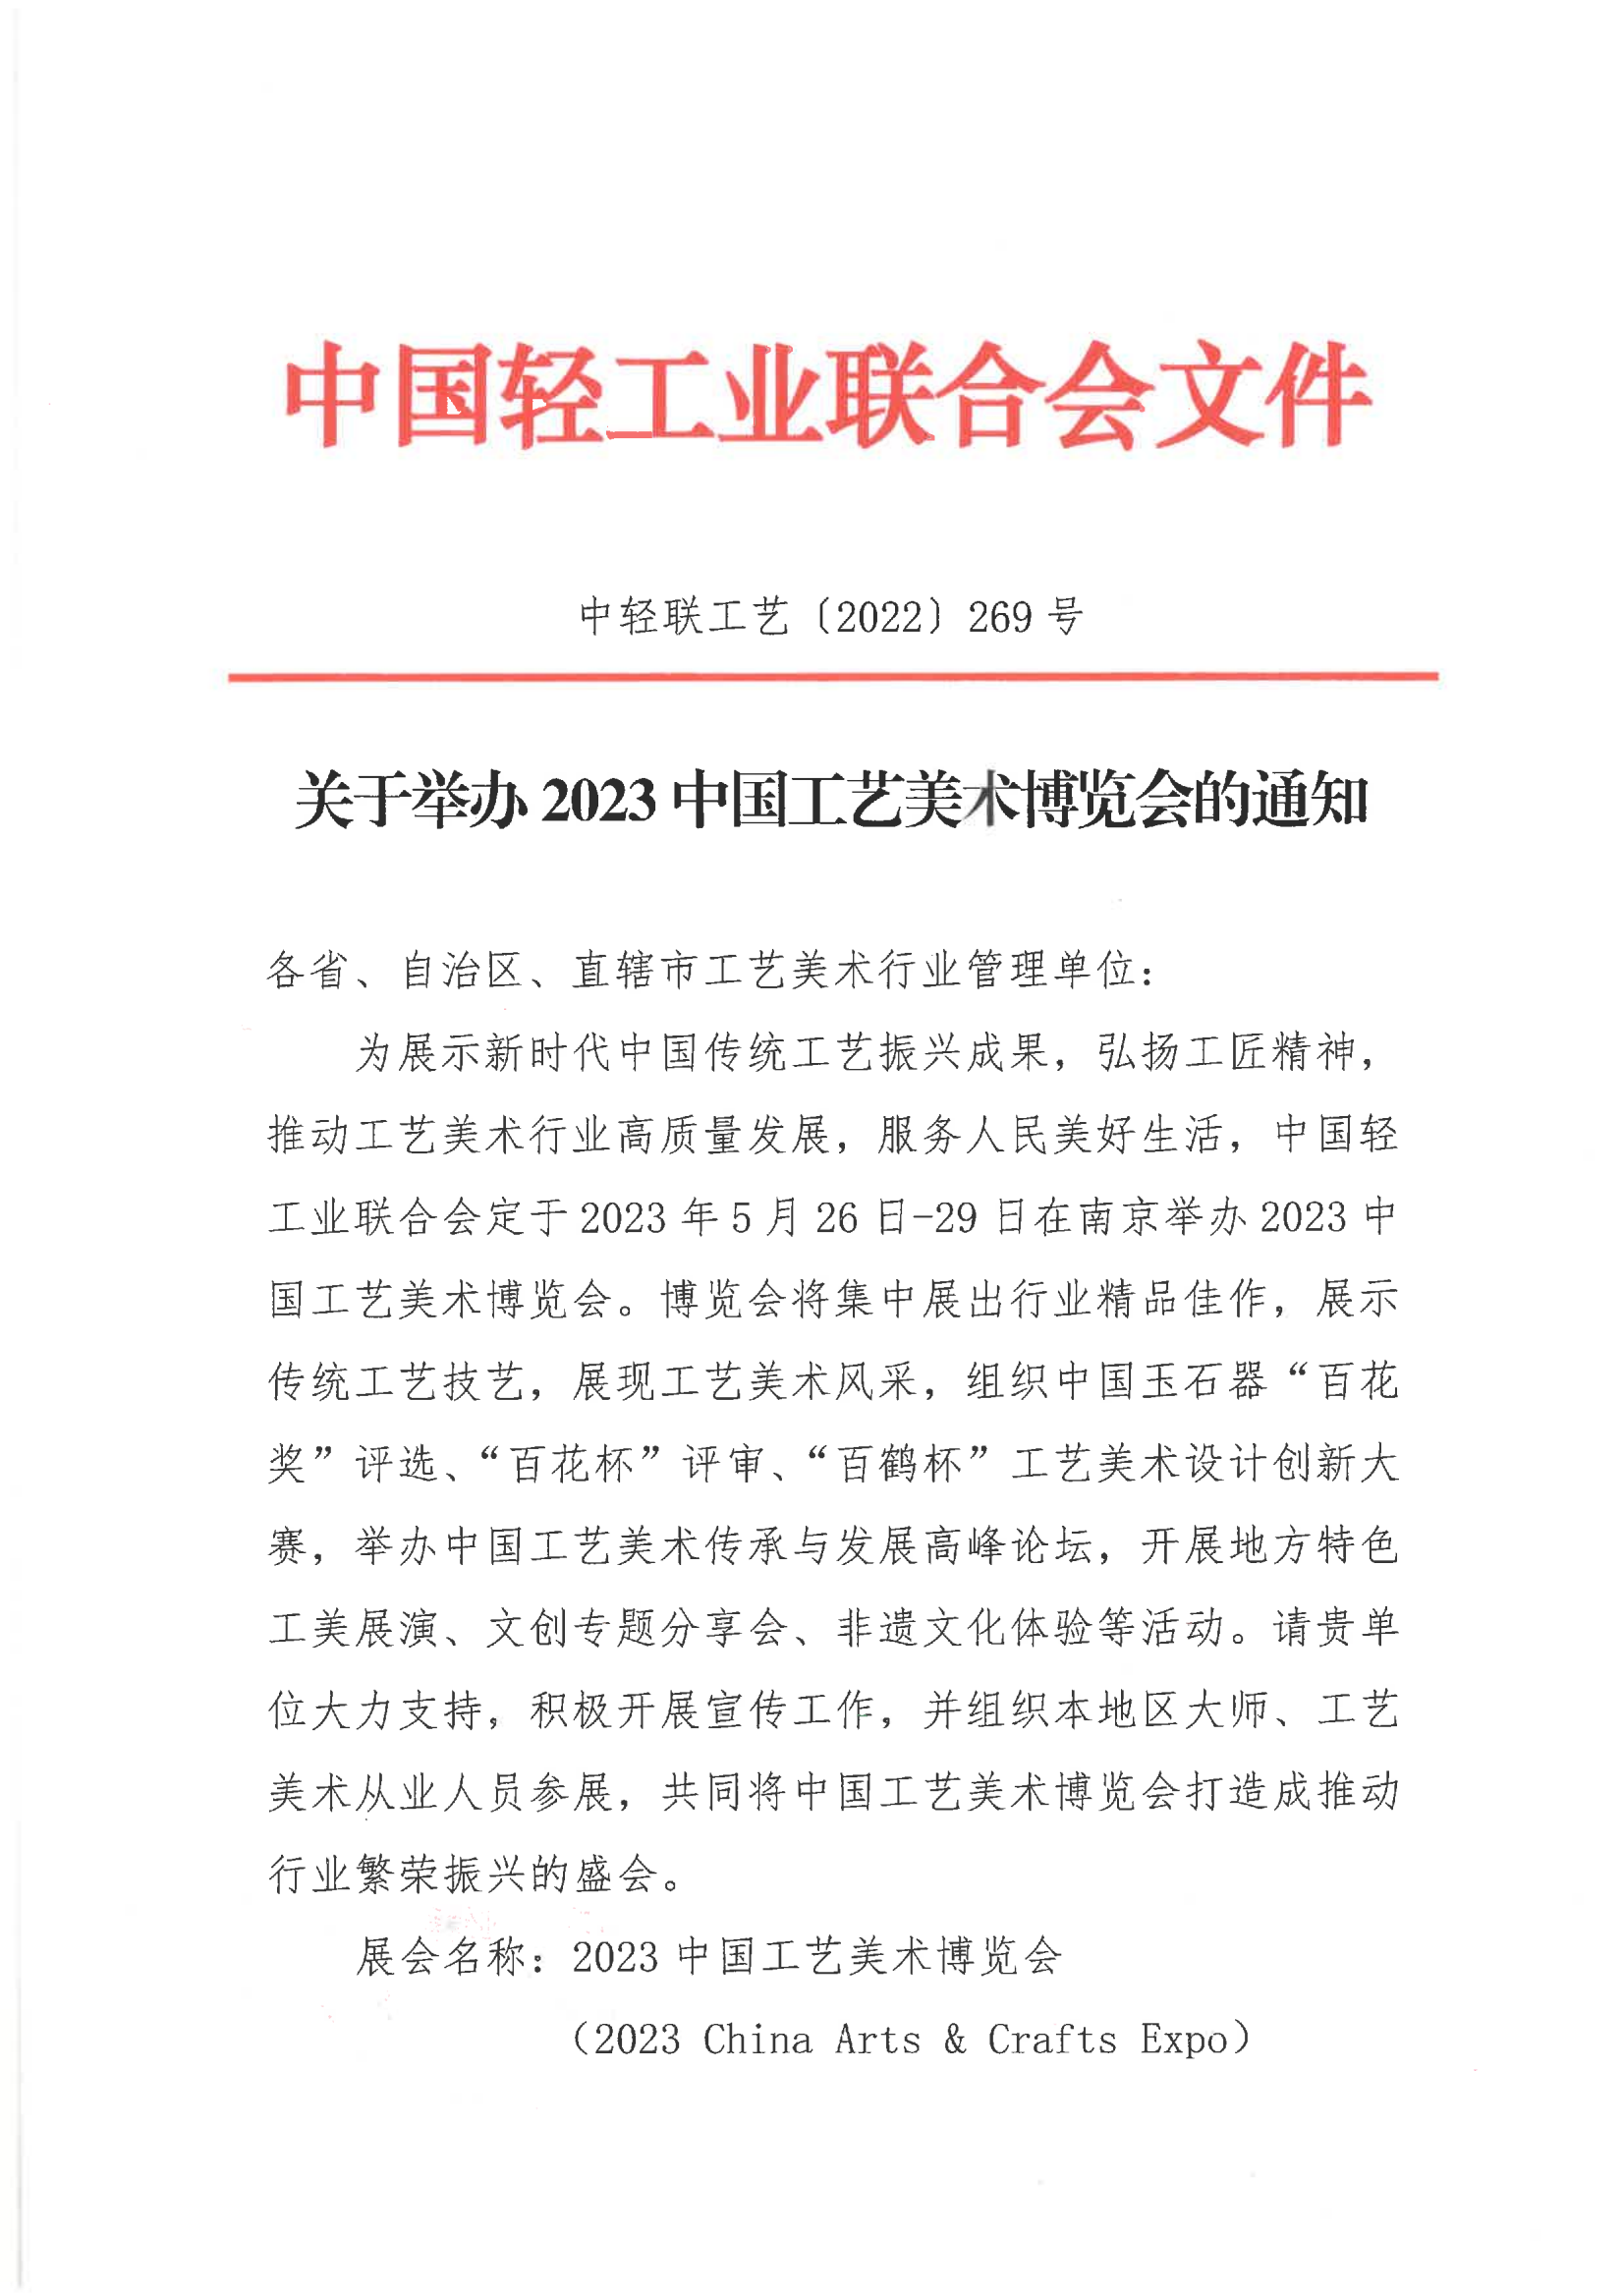 关于举办2023中国工艺美术博览会的通知（单位）_00.png